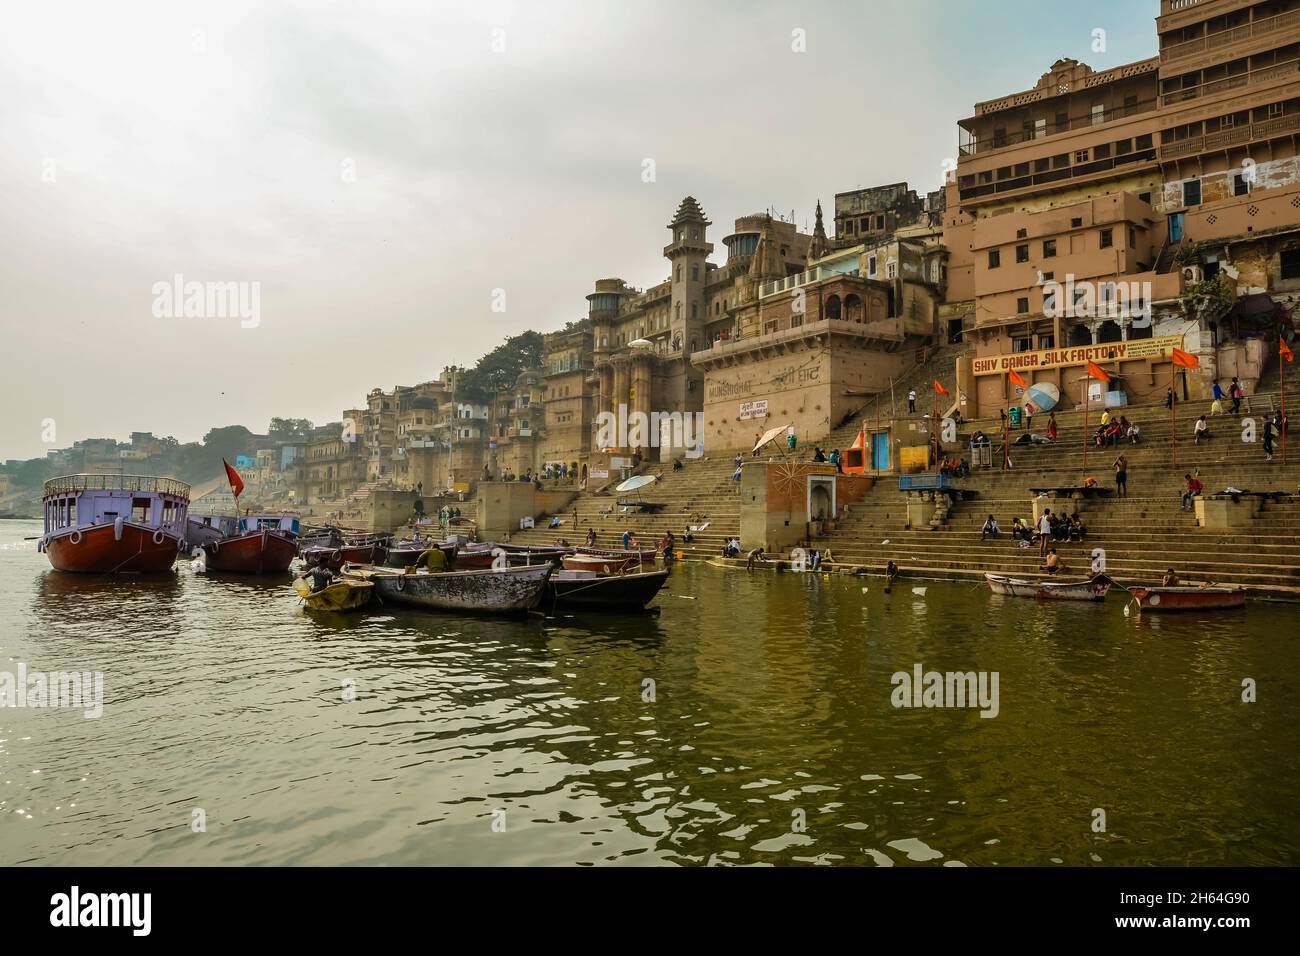 The ancient city of Varanasi Stock Photo